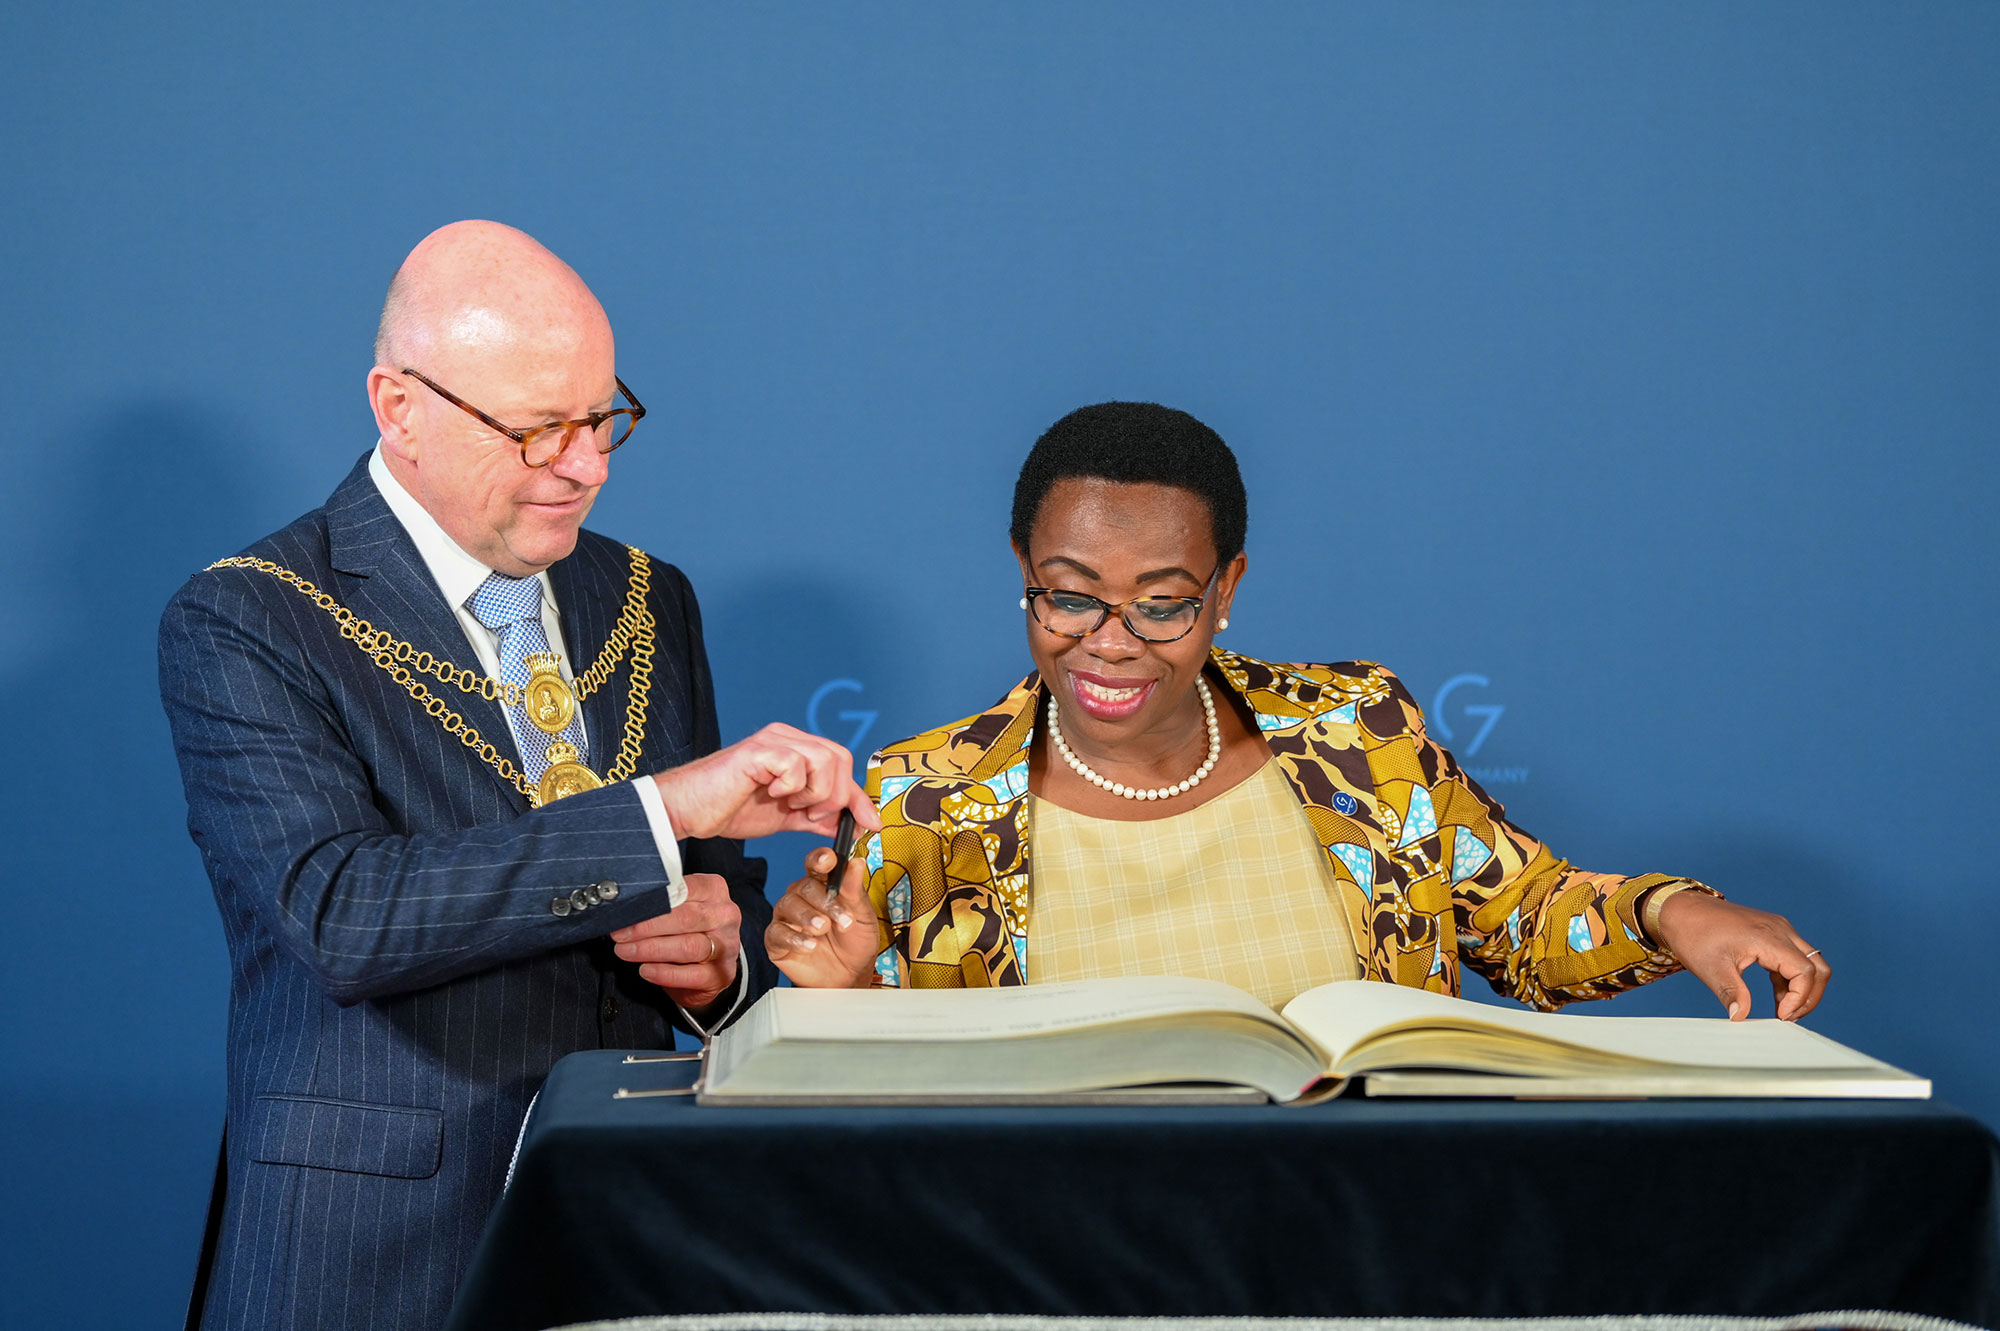  Die Außenbeauftragte der Afrikanischen Union, Monique Nsanzabaganwa, trägt sich bei Oberbürgermeister Markus Lewe in das Goldene Buch ein